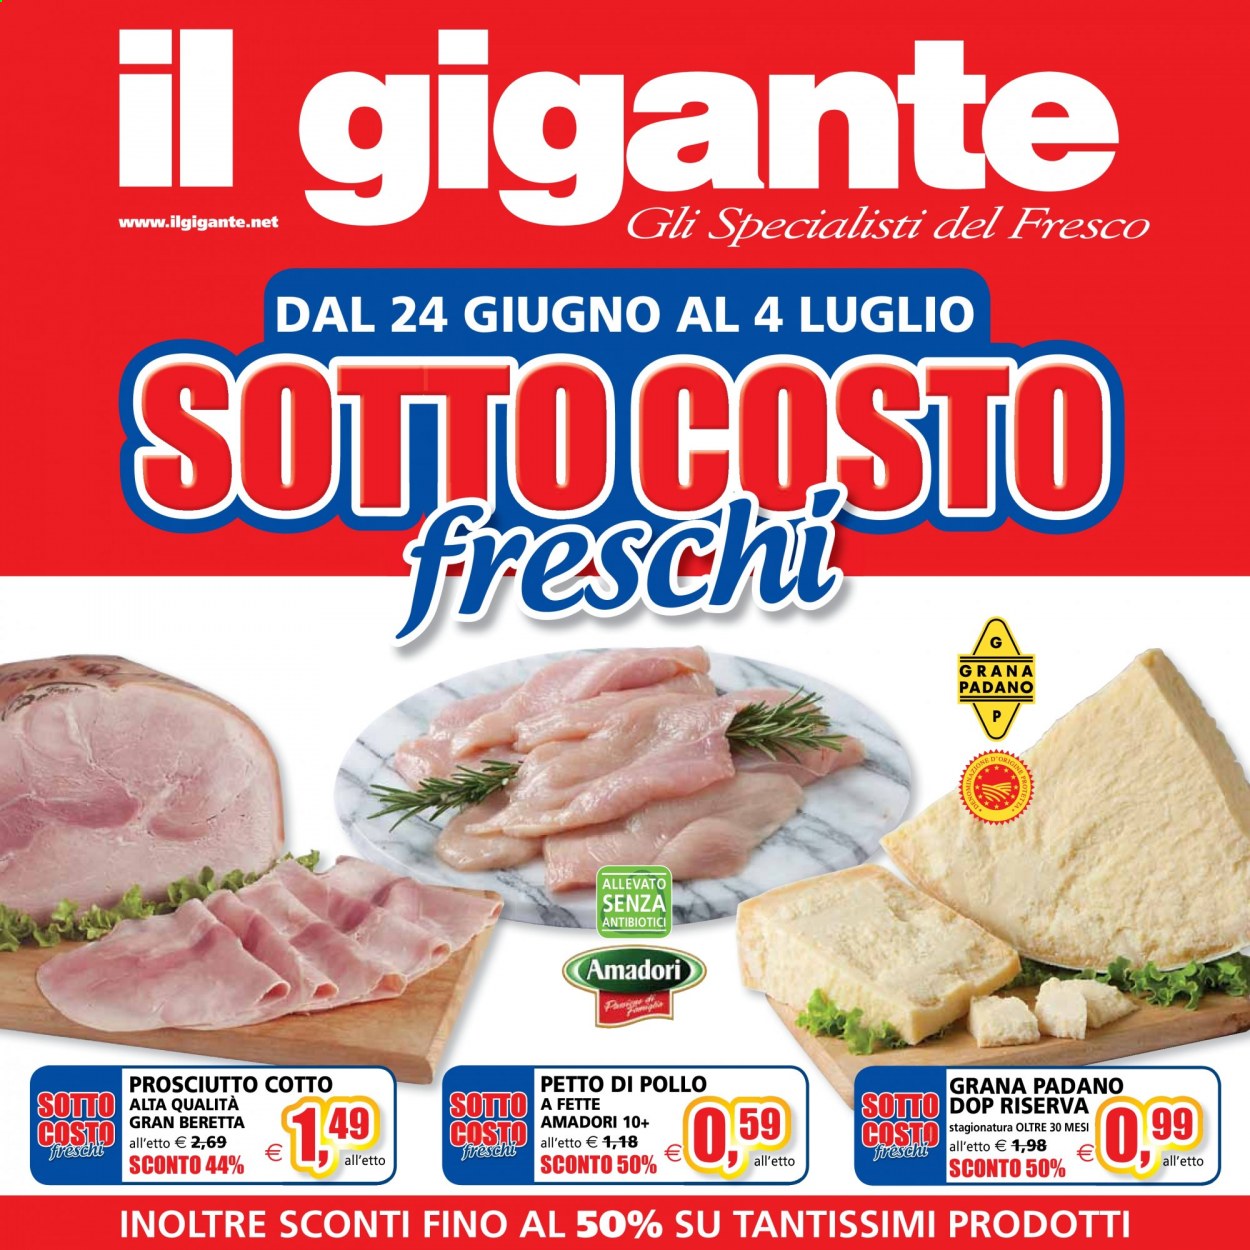 thumbnail - Volantino Il Gigante - 24/6/2021 - 4/7/2021 - Prodotti in offerta - petto di pollo, Amadori, prosciutto, prosciutto cotto, Fratelli Beretta, formaggio, Grana Padano. Pagina 1.